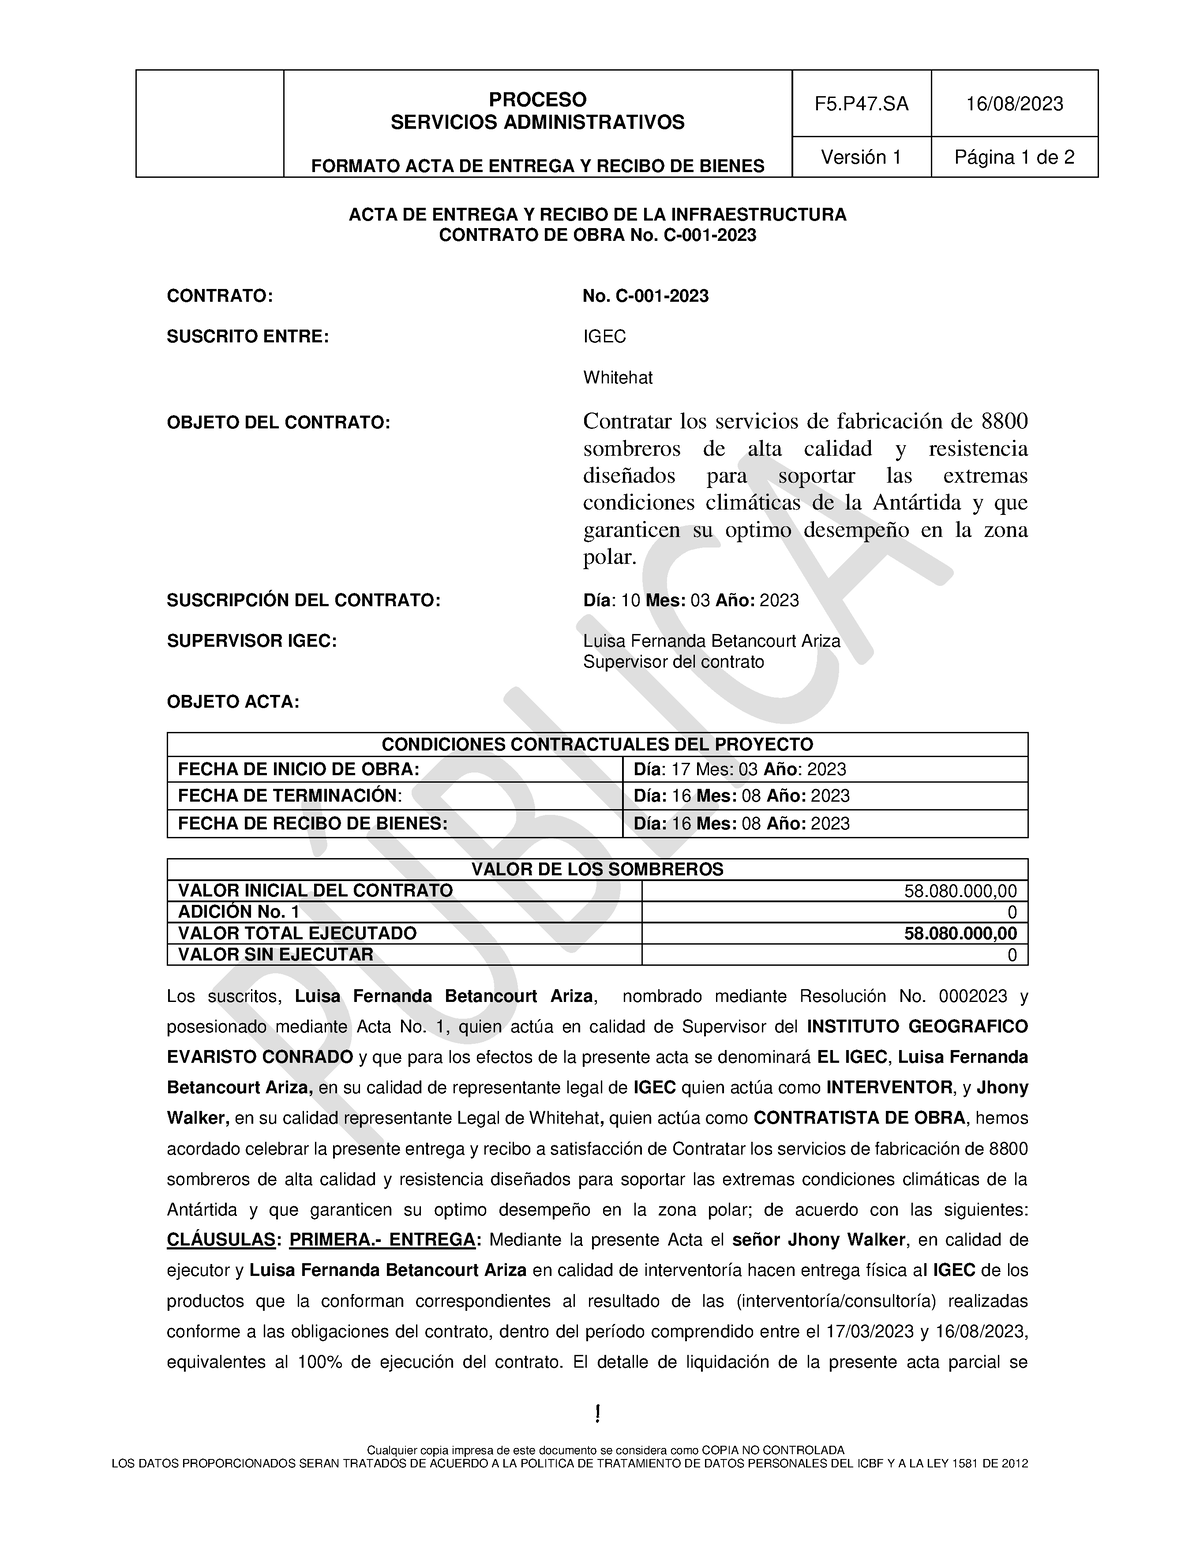 Acta De Recibo N Proceso Servicios Administrativos Formato Acta De